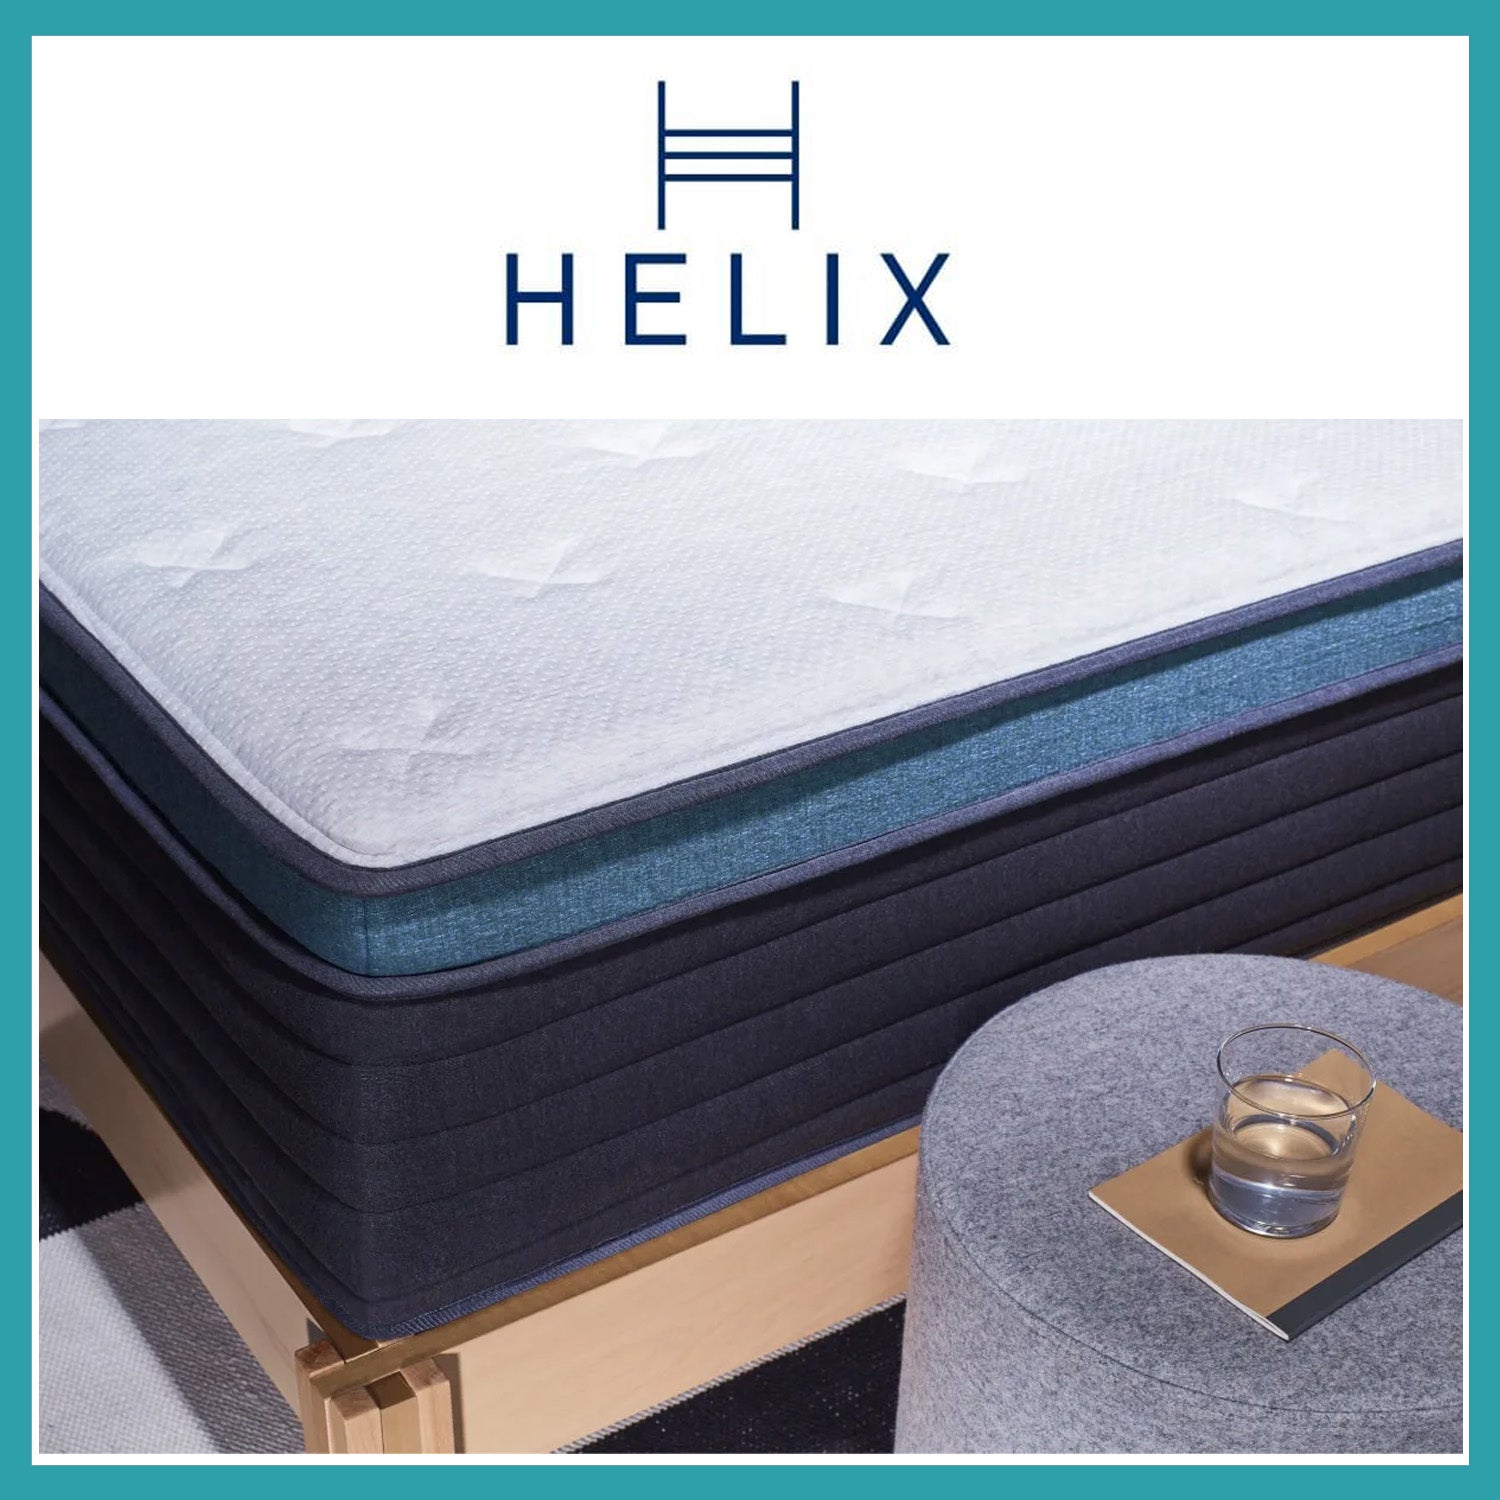 Helix Sunset Luxe Mattress 20% + 2 Free Dream Pillows